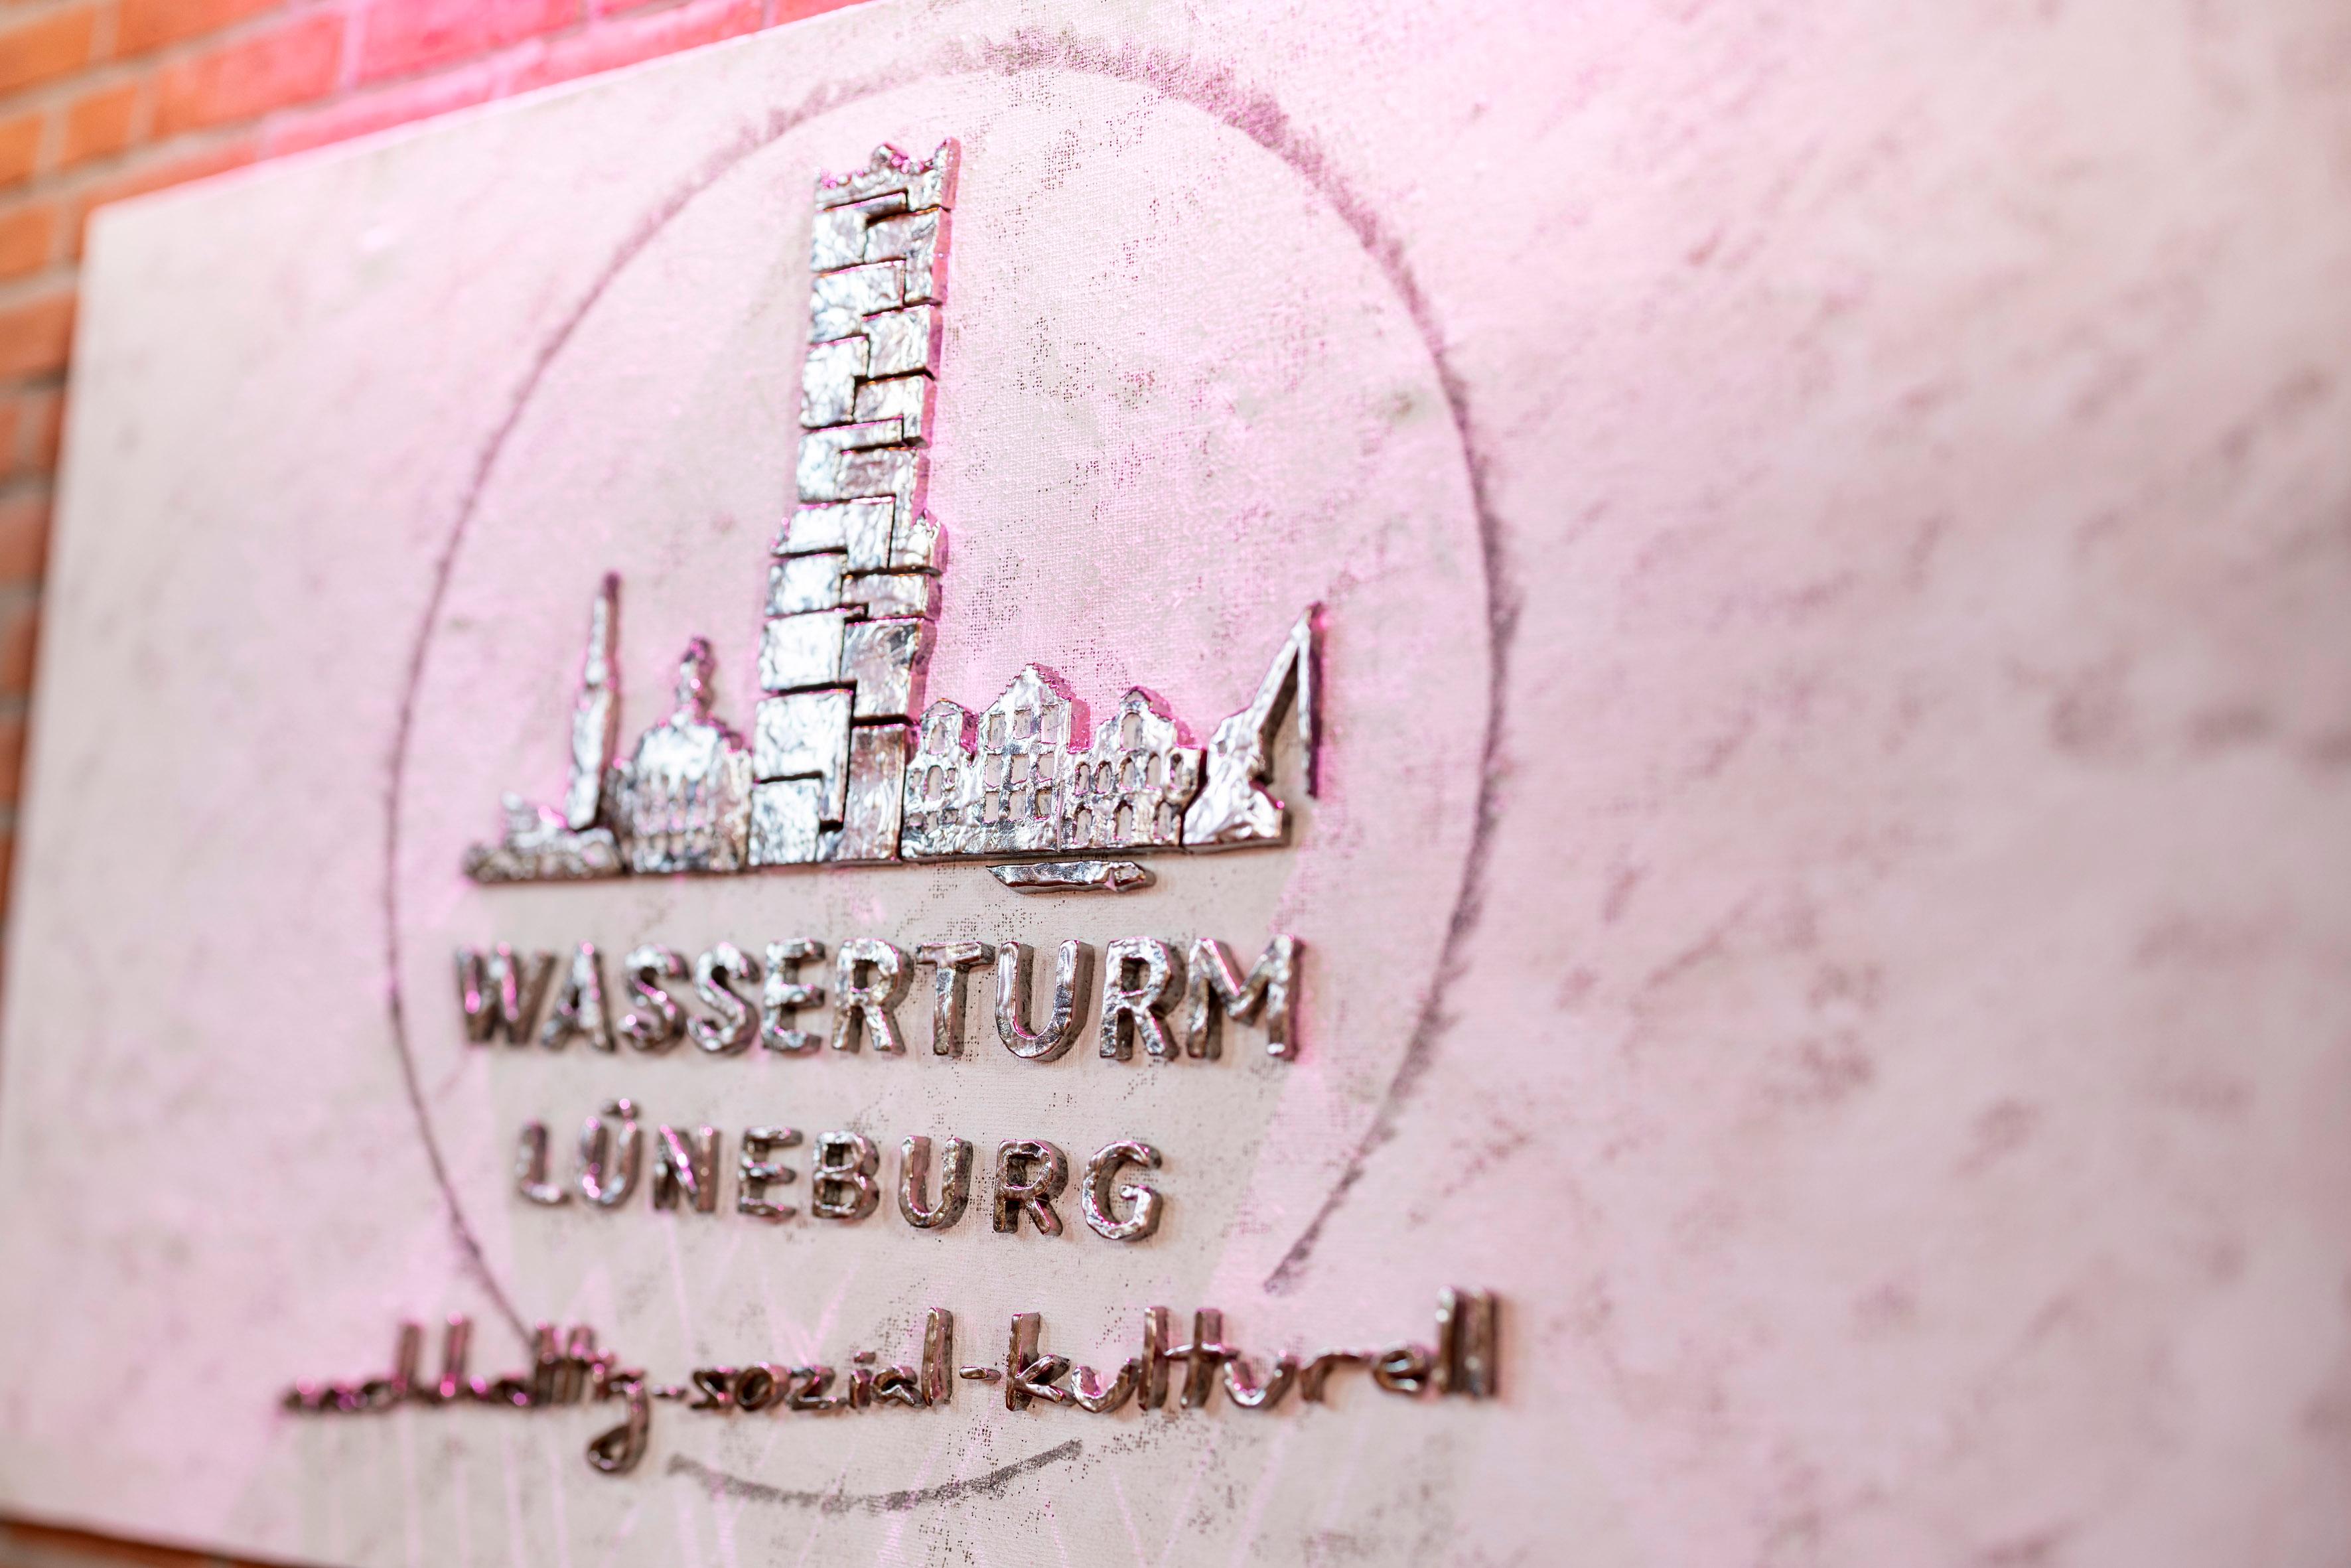 Imageaufnahmen; Architektur; Wasserturm Lüneburg; Fotograf Thorsten Scherz